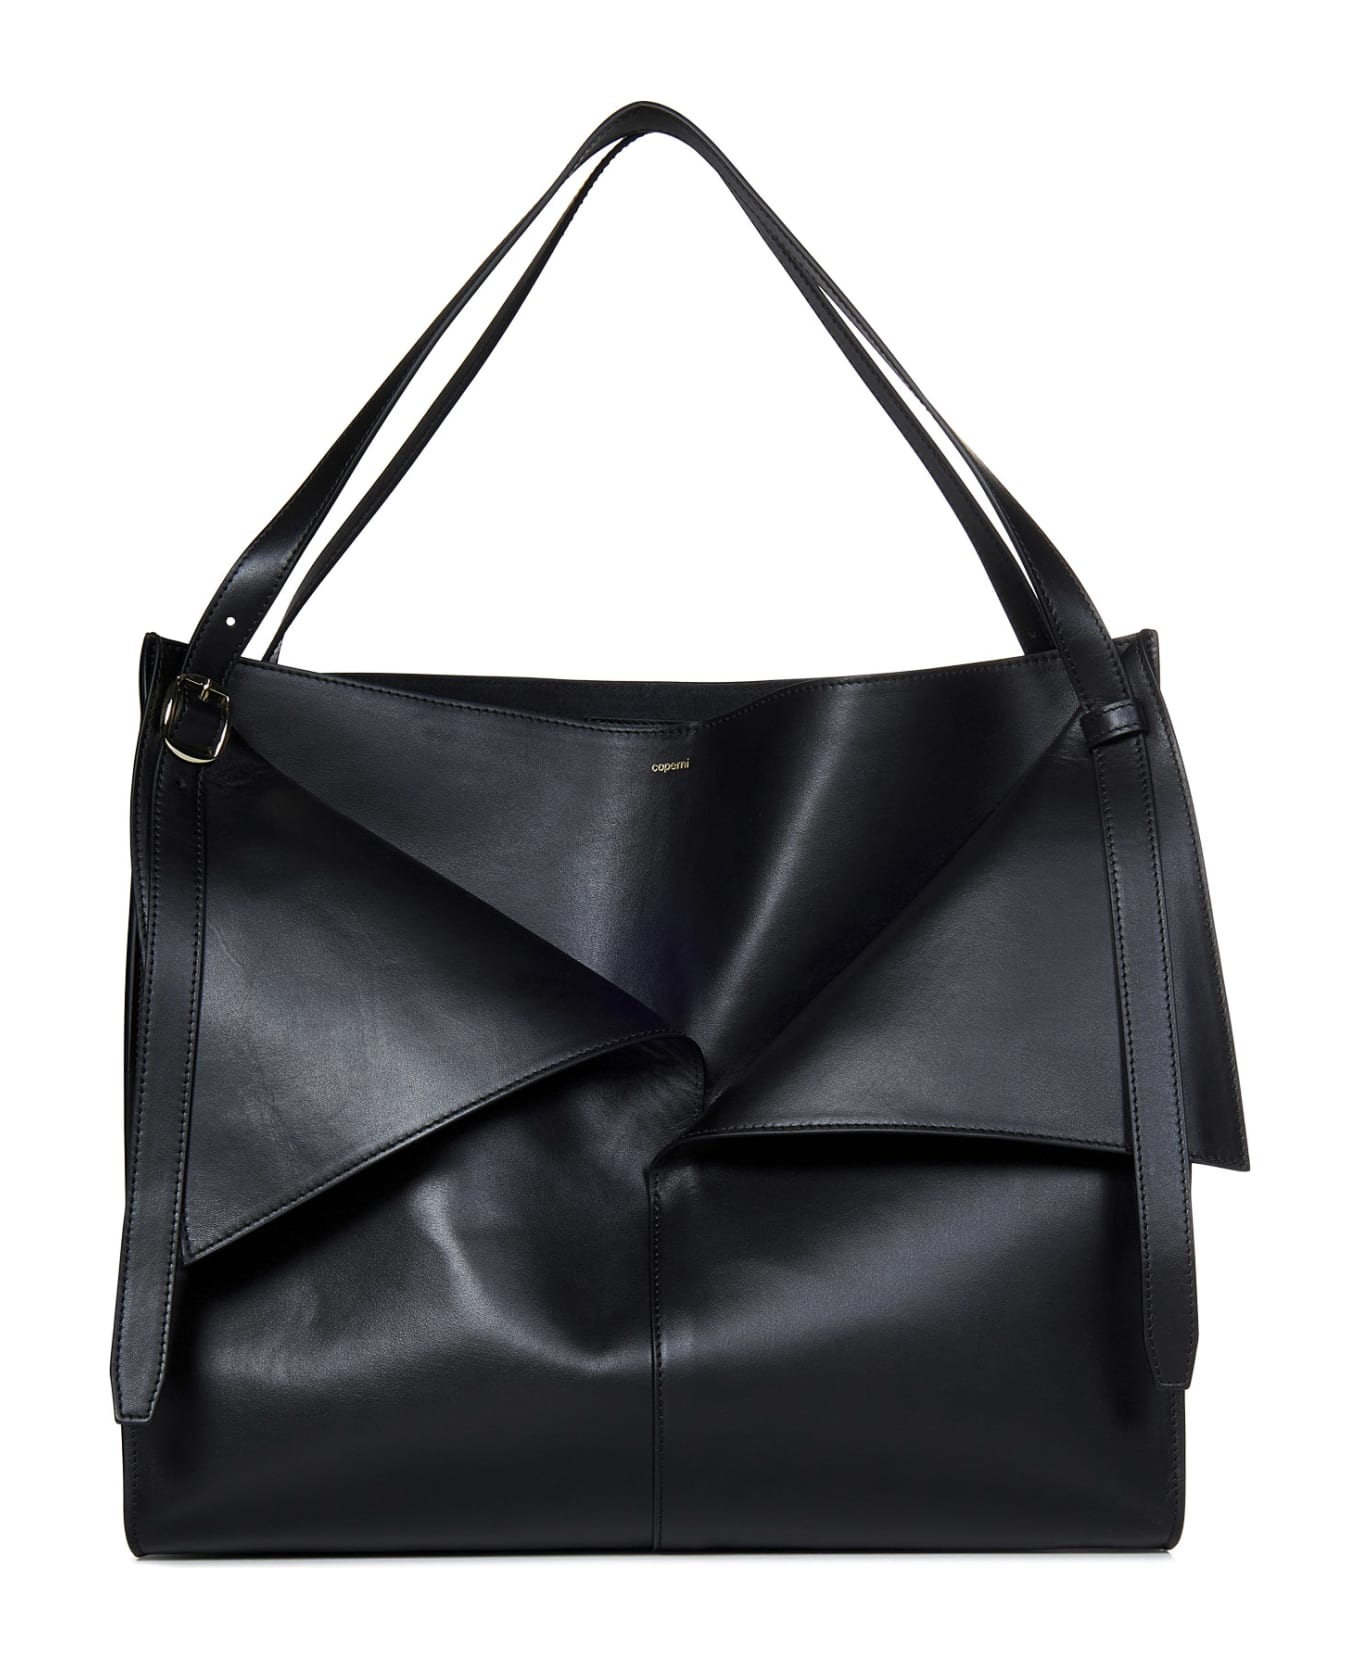 Coperni Belt Cabas Shoulder Bag - Black